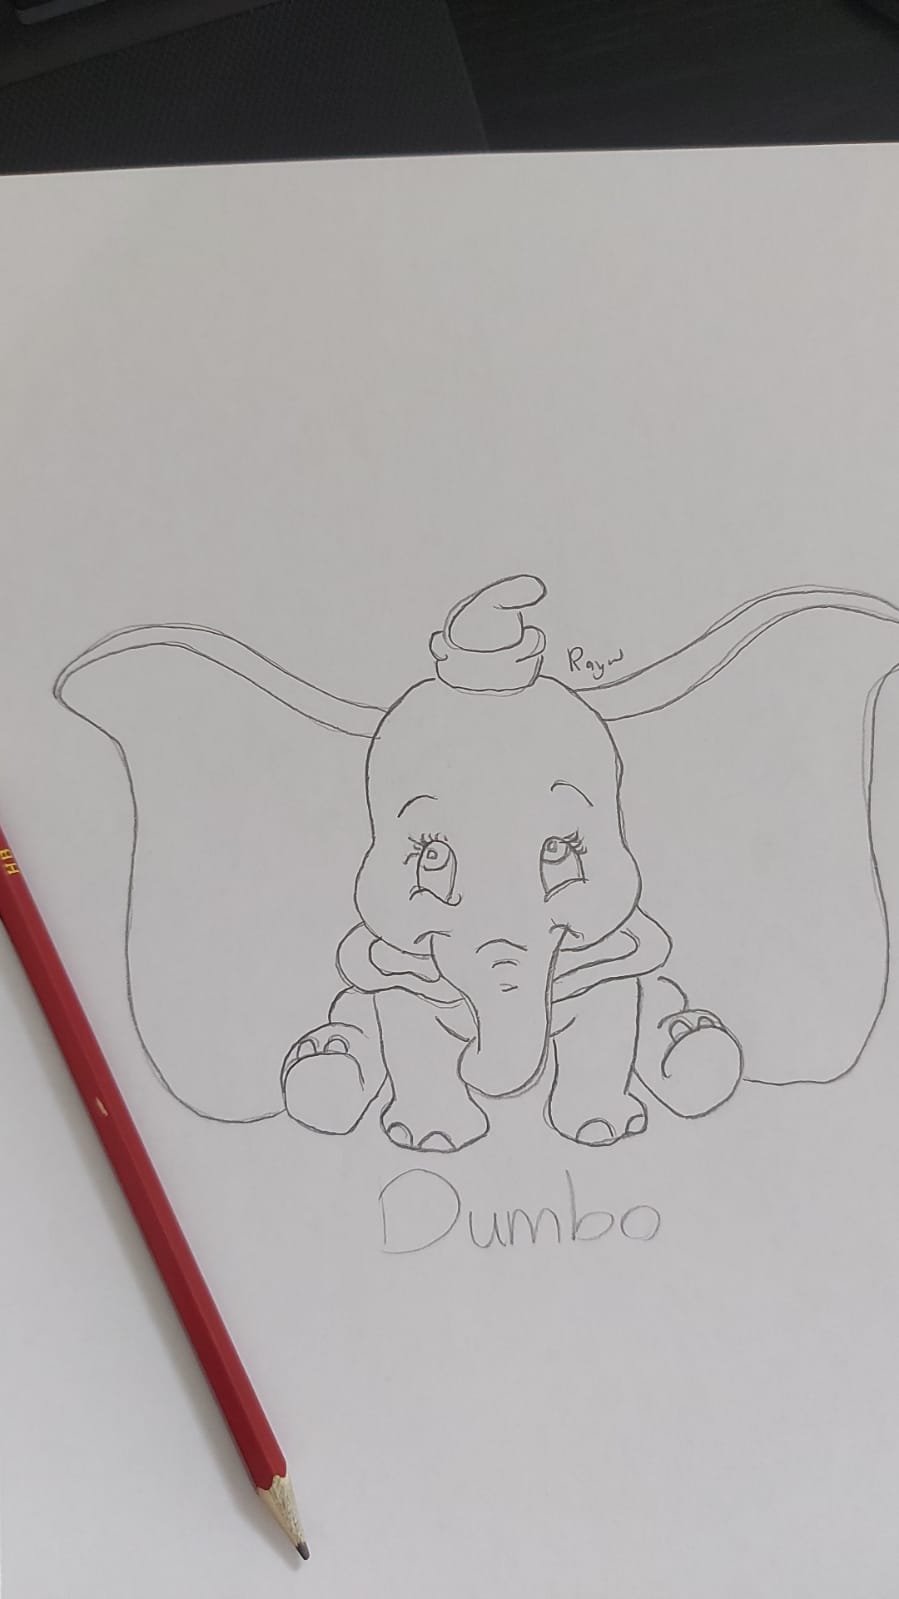 Dumbo.jpeg